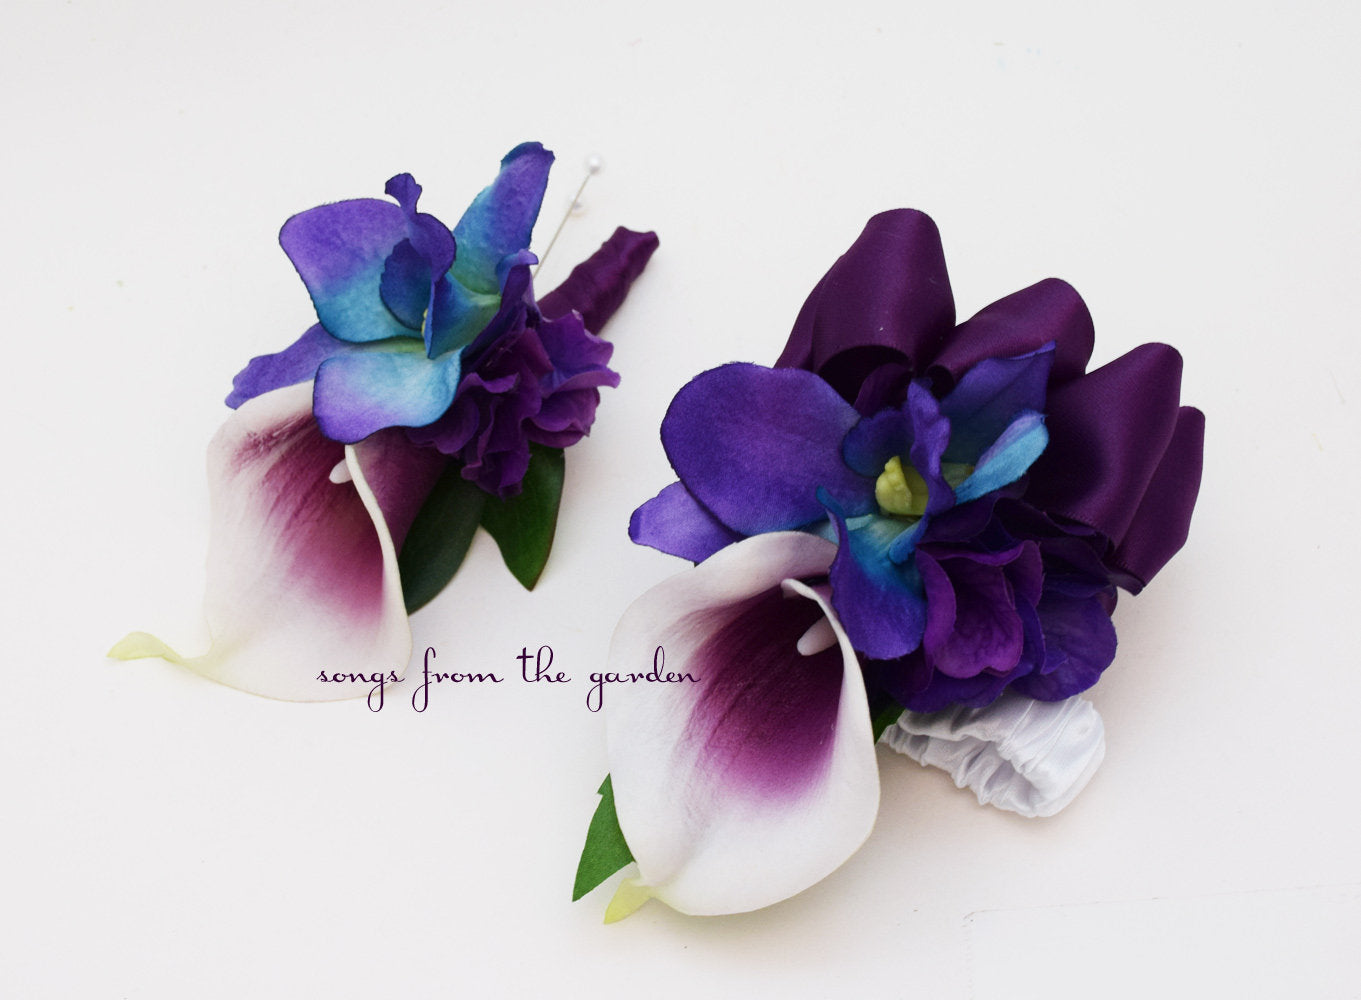 Blooming Wildflower Garland Atco Florist: Blue Violet Flowers